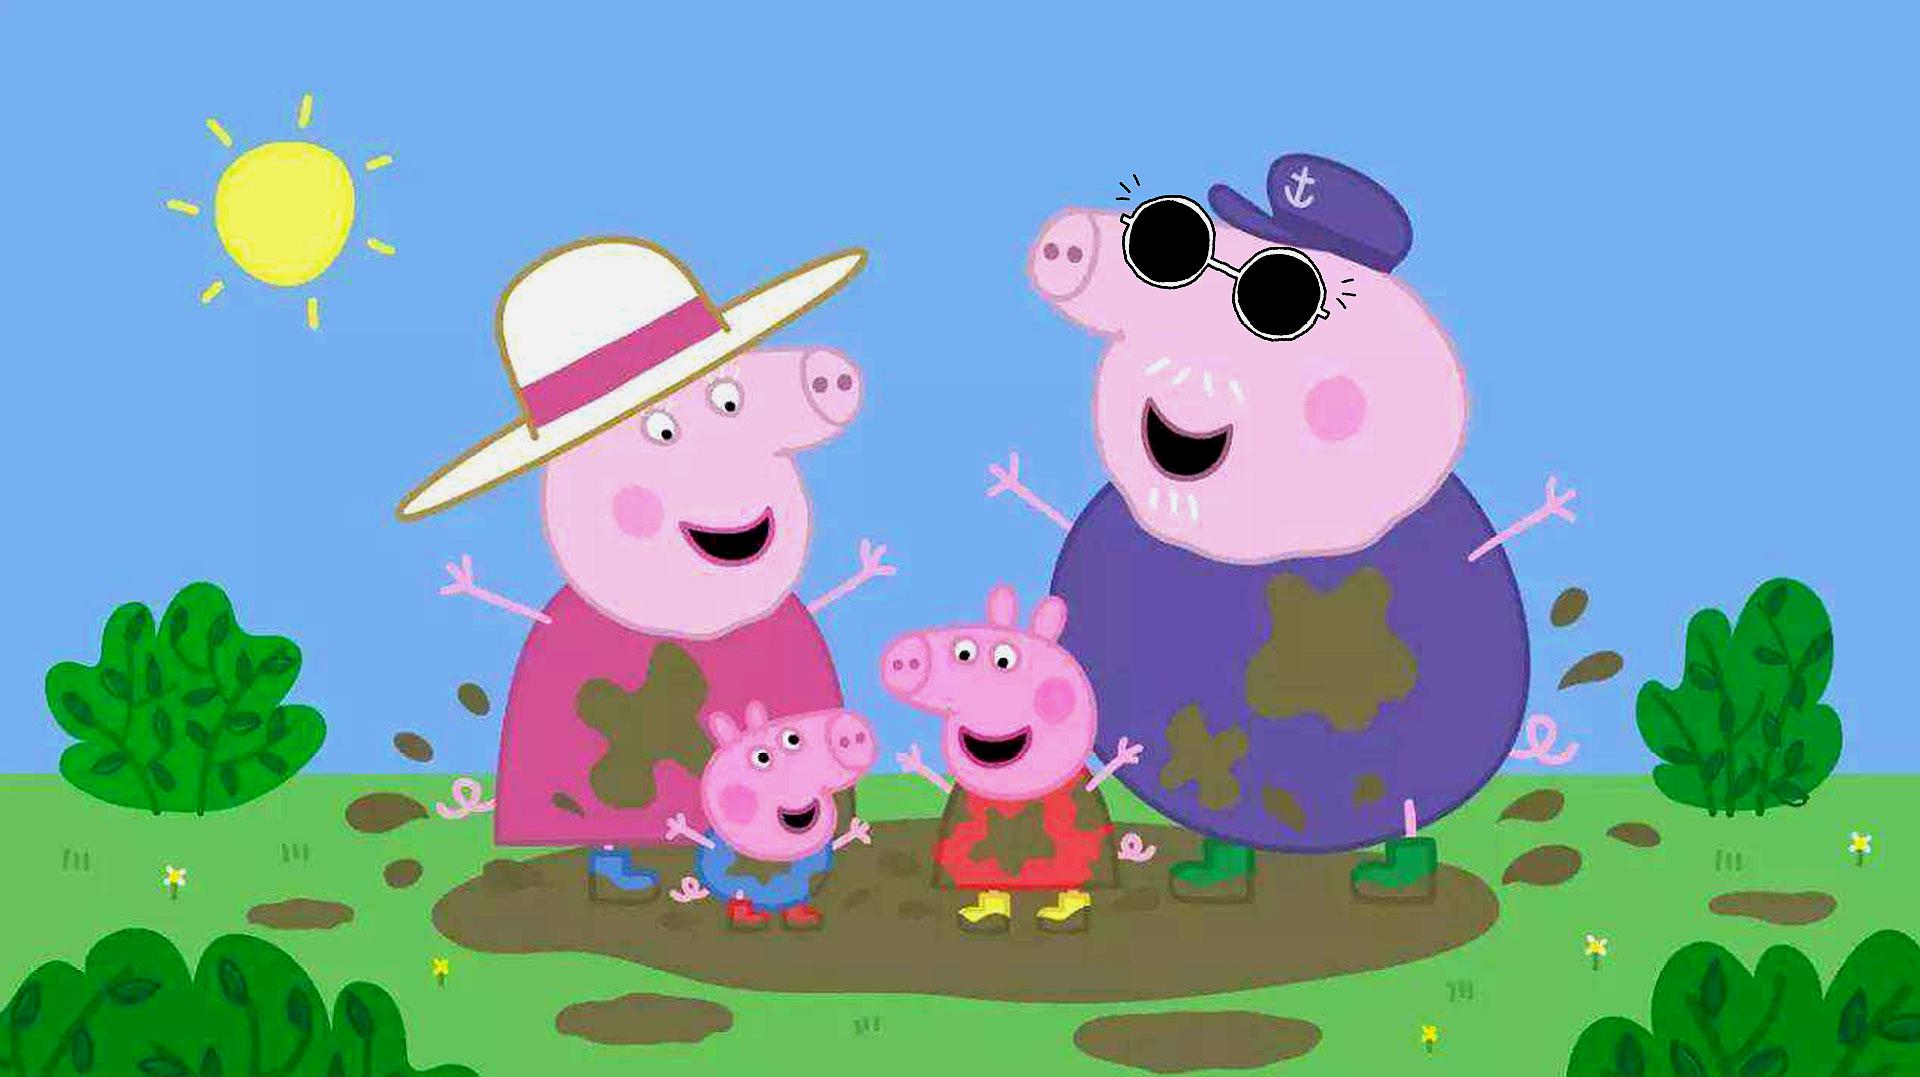 玩具宝贝乐园之早教视频:小猪佩奇系列动画